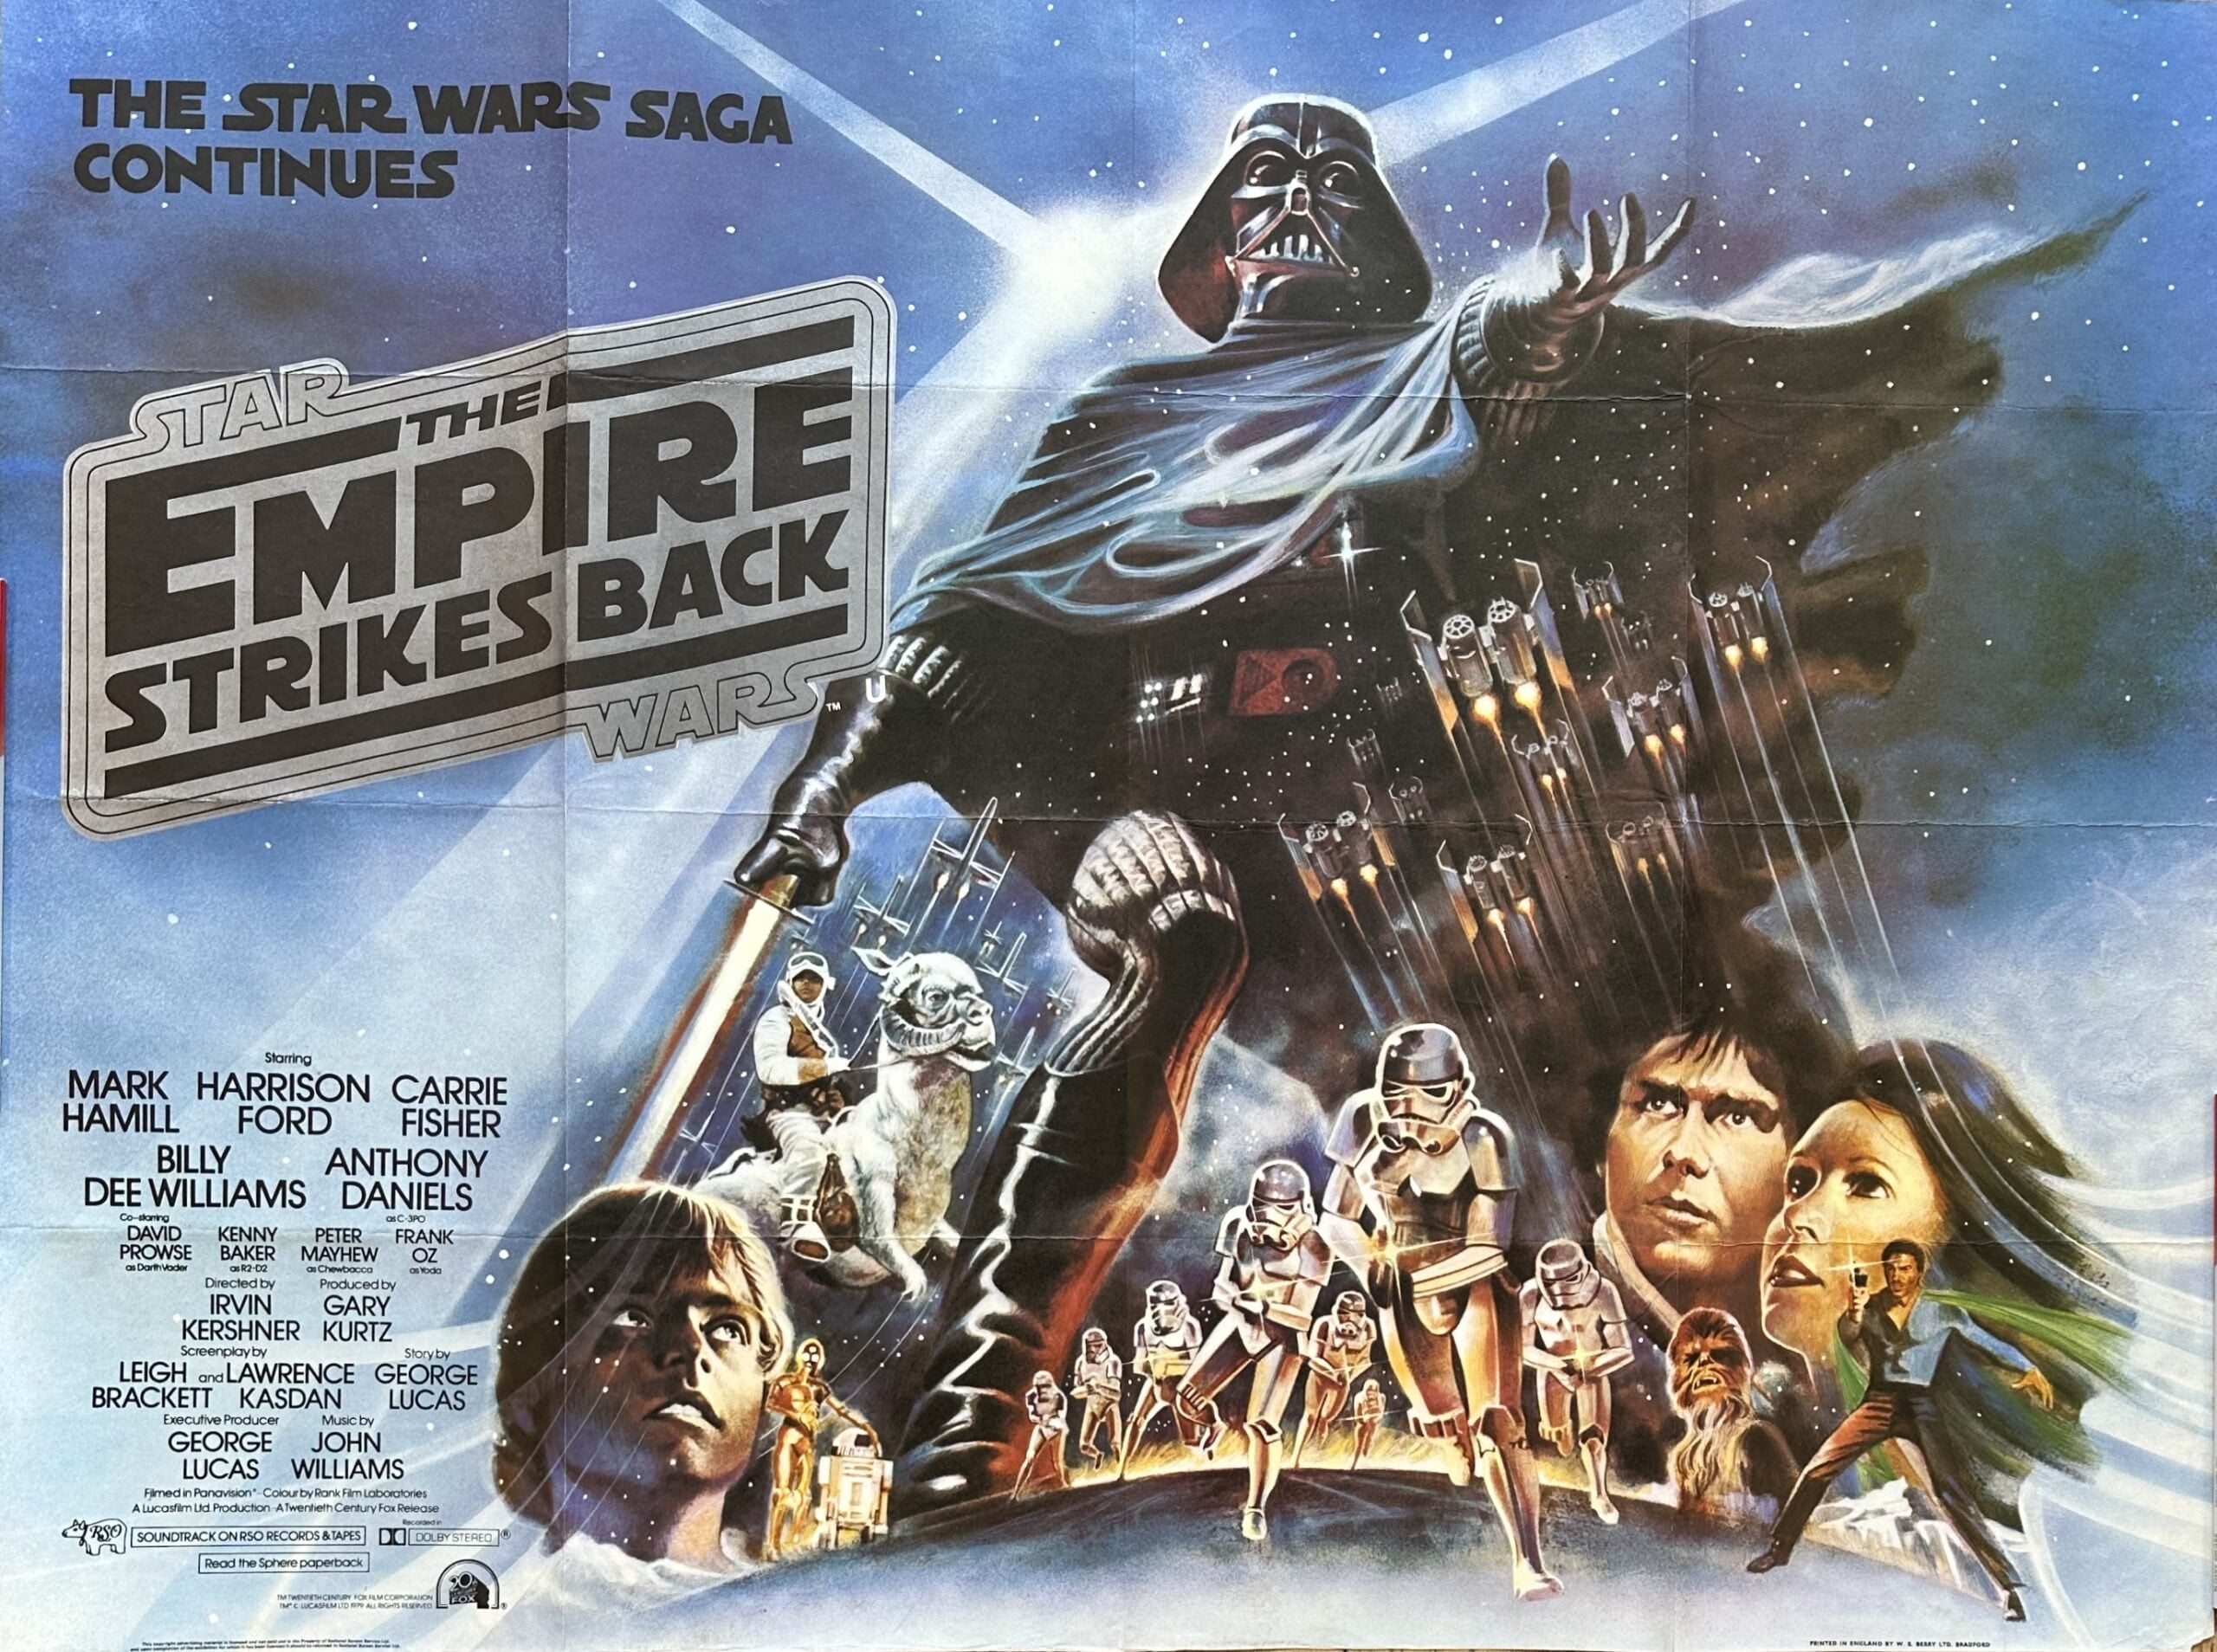 Original vintage cinema movie poster for Star Wars Episode V, The Empire Strikes Back